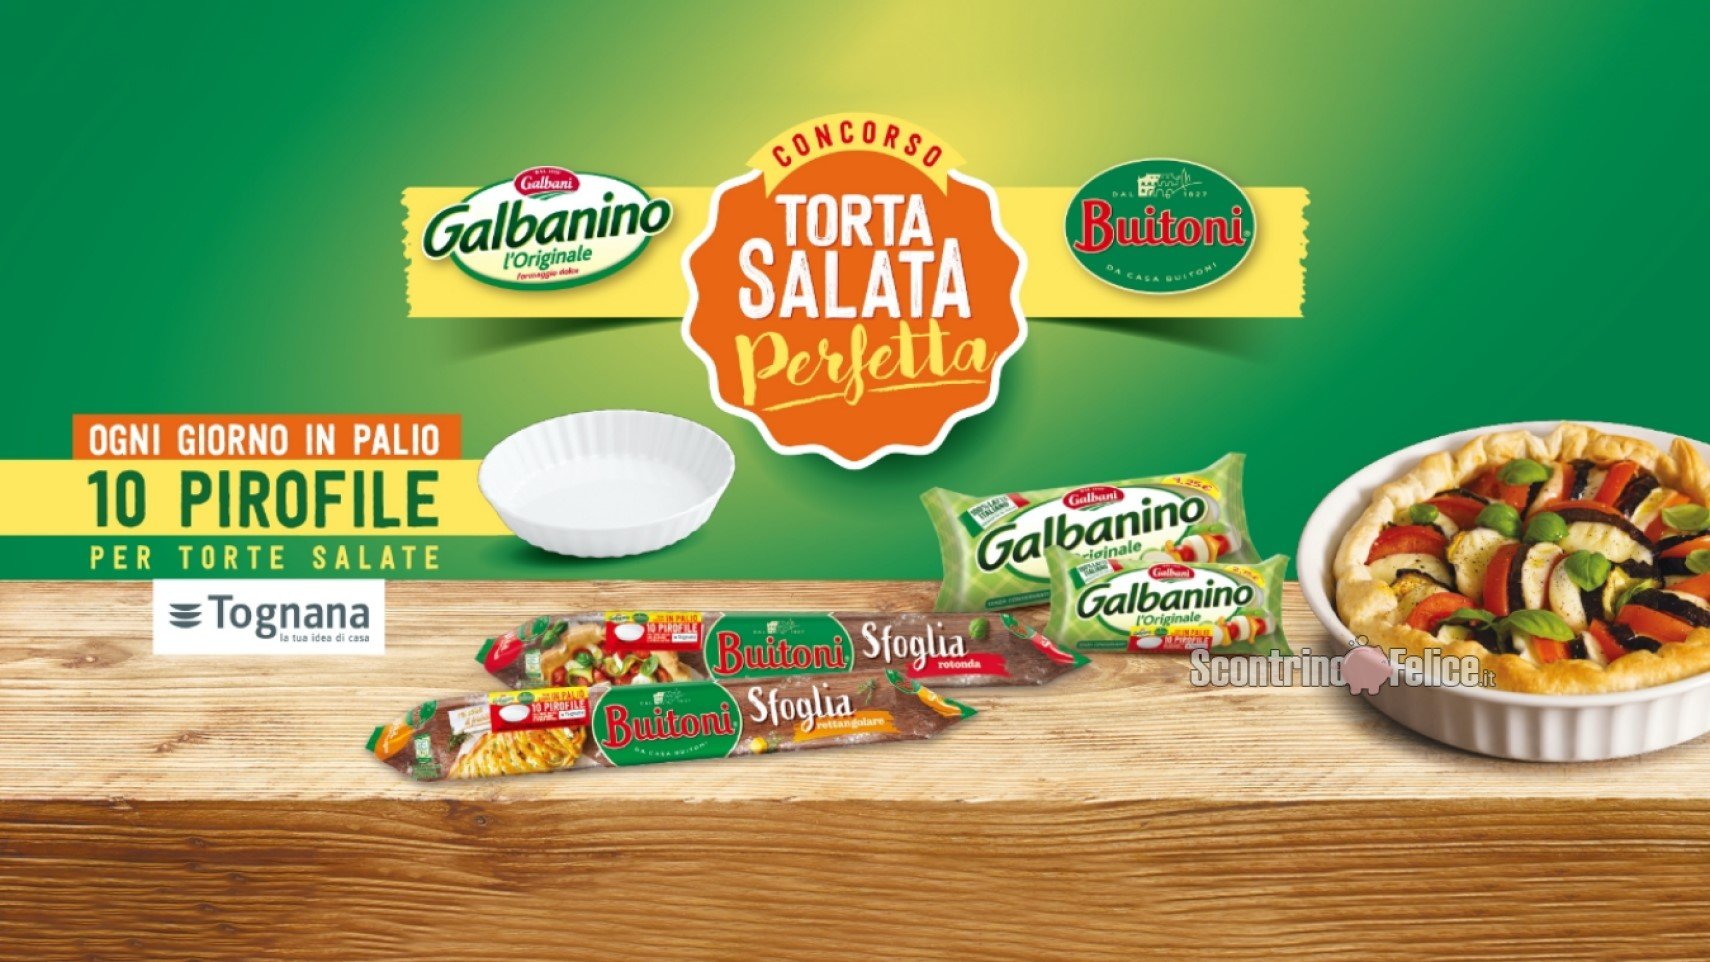 Concorso Galbanino e Buitoni "Torta salata perfetta": in palio 10 pirofile Tognana ogni giorno!